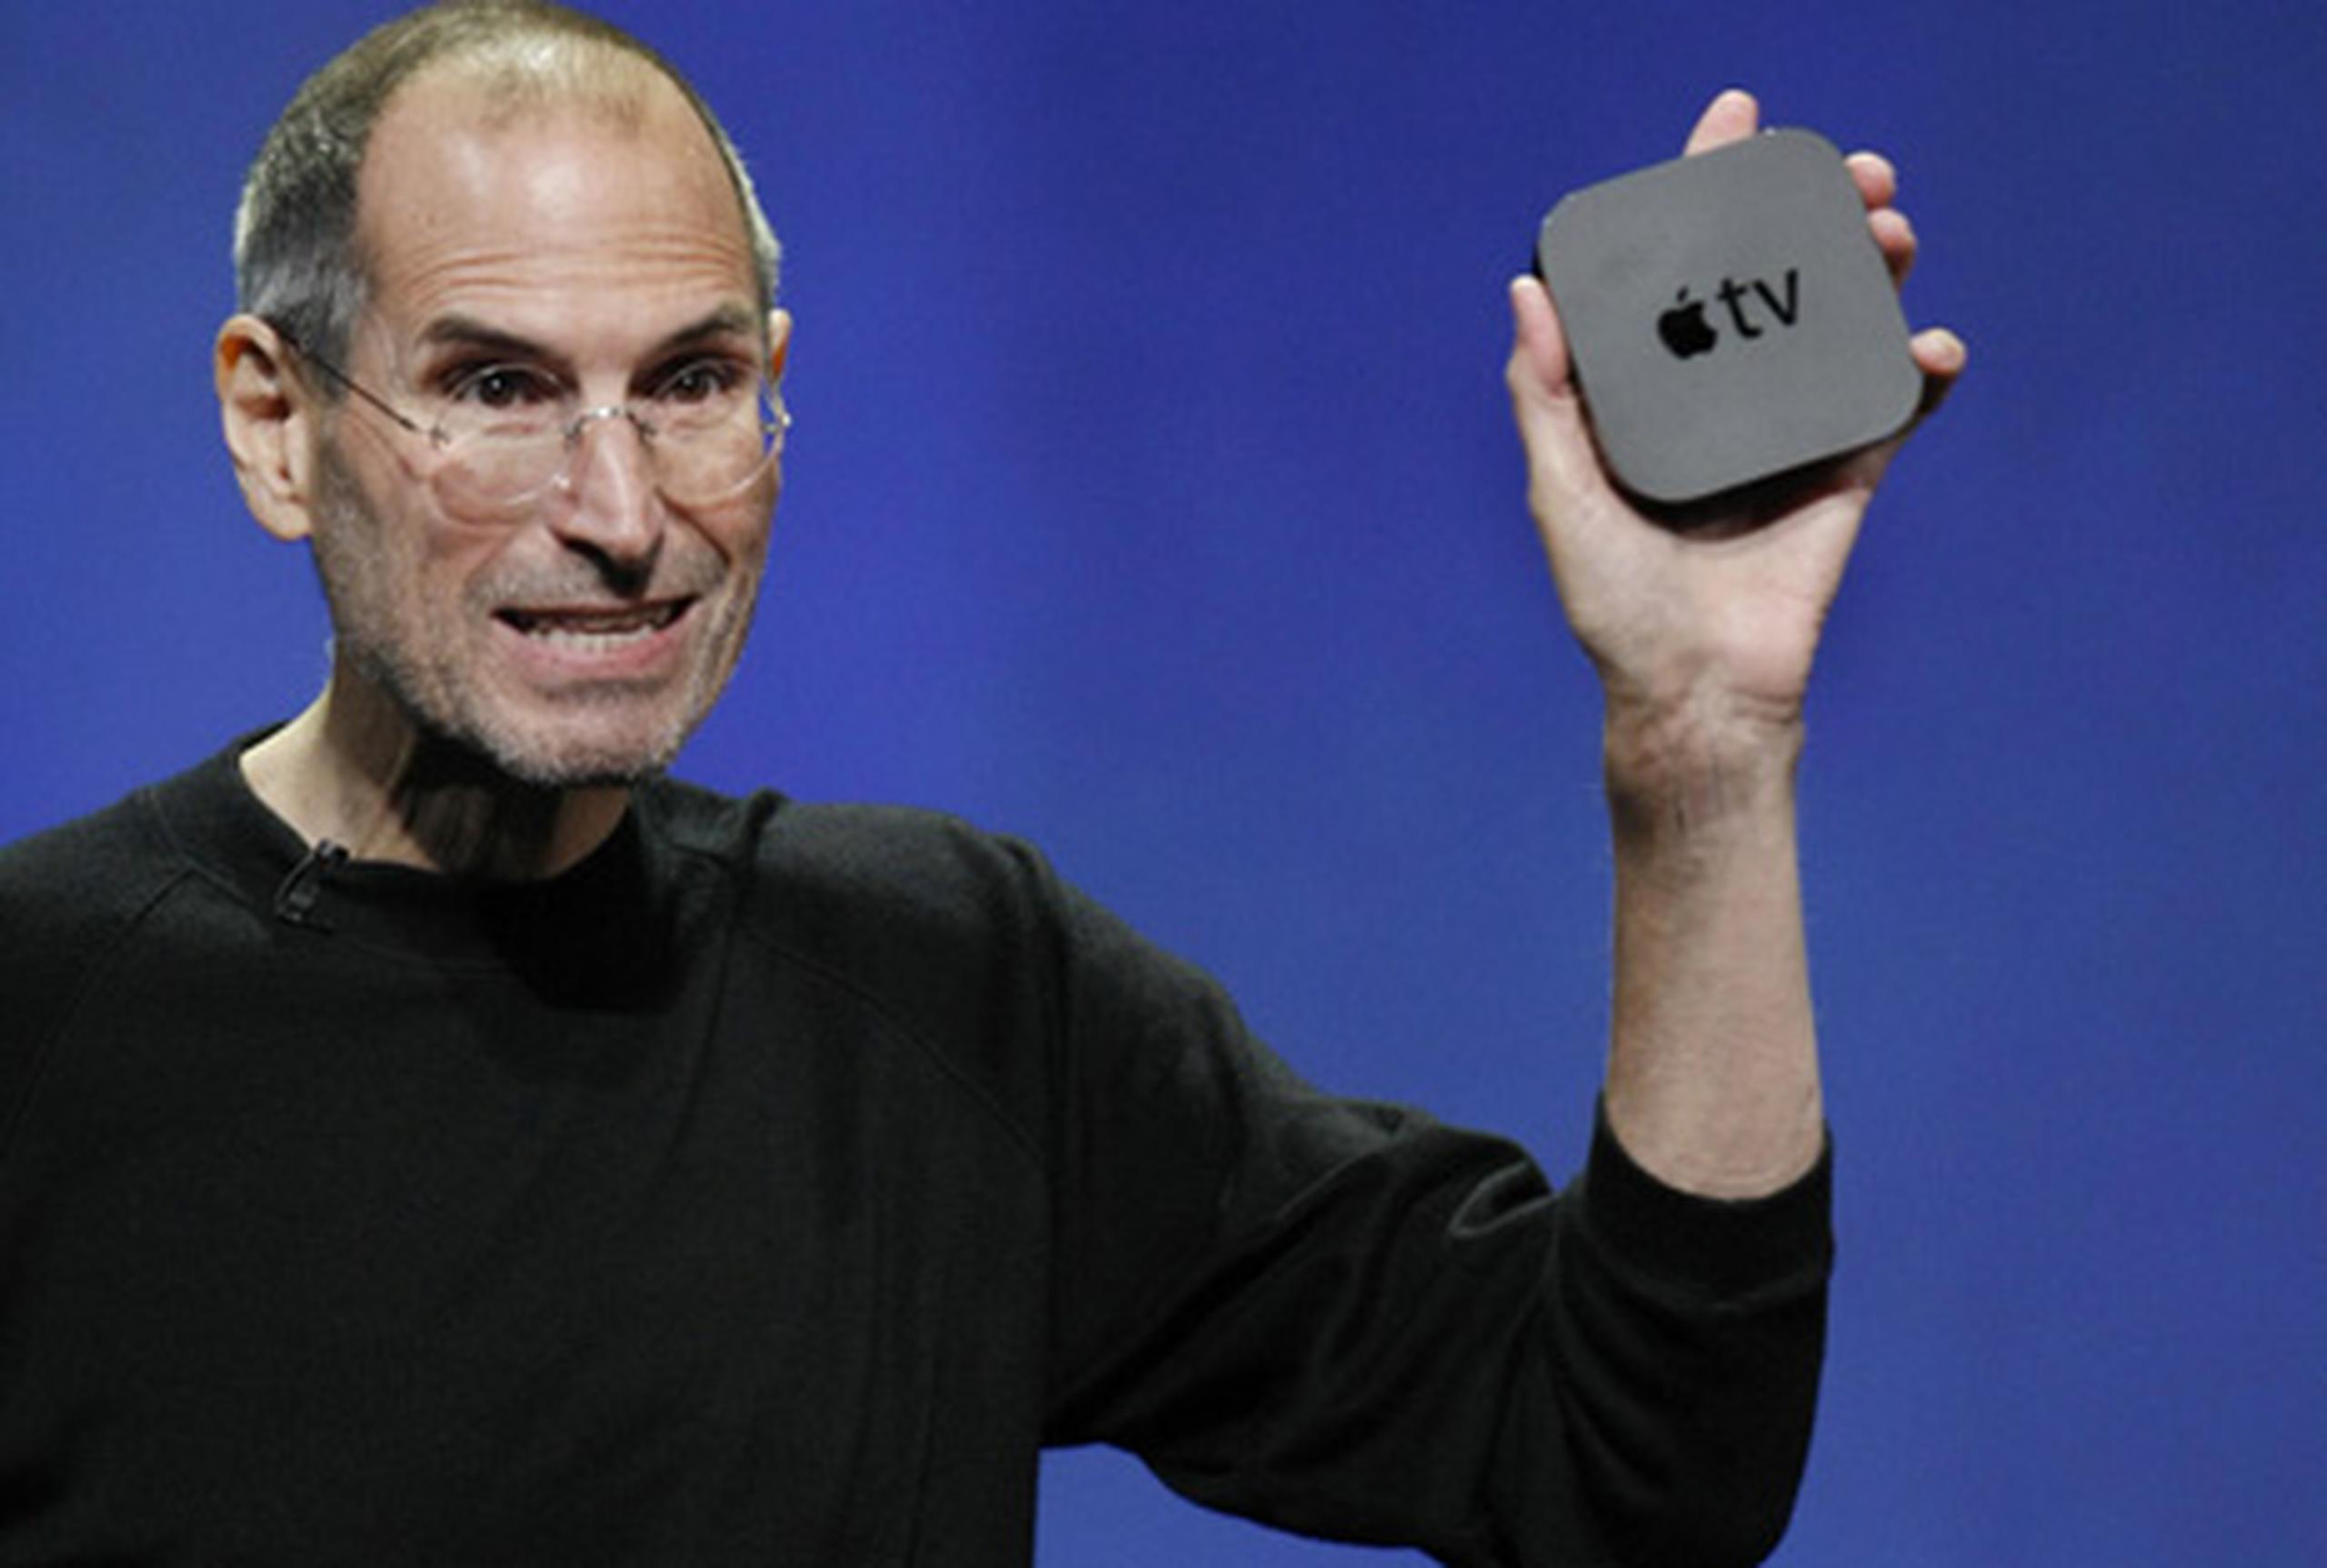 El nuevo aparato que presentó hoy Steve Jobs sólo permitirá a las personas alquilar contenido, no comprarlo. (AP)